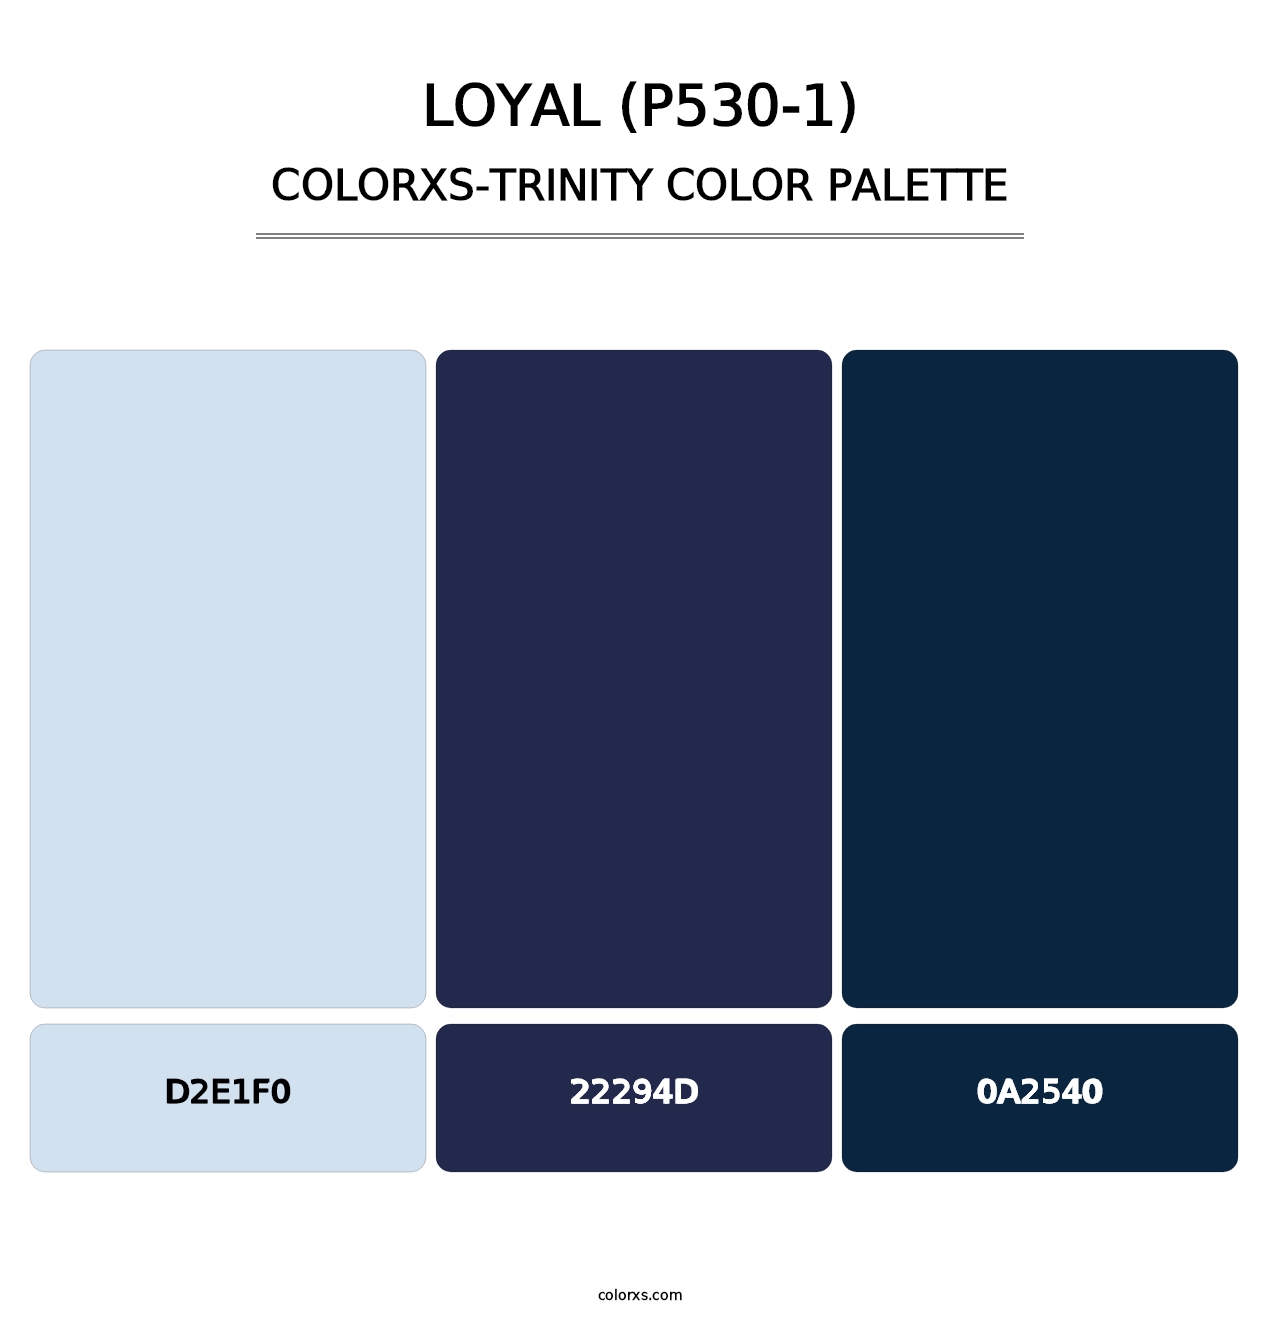 Loyal (P530-1) - Colorxs Trinity Palette